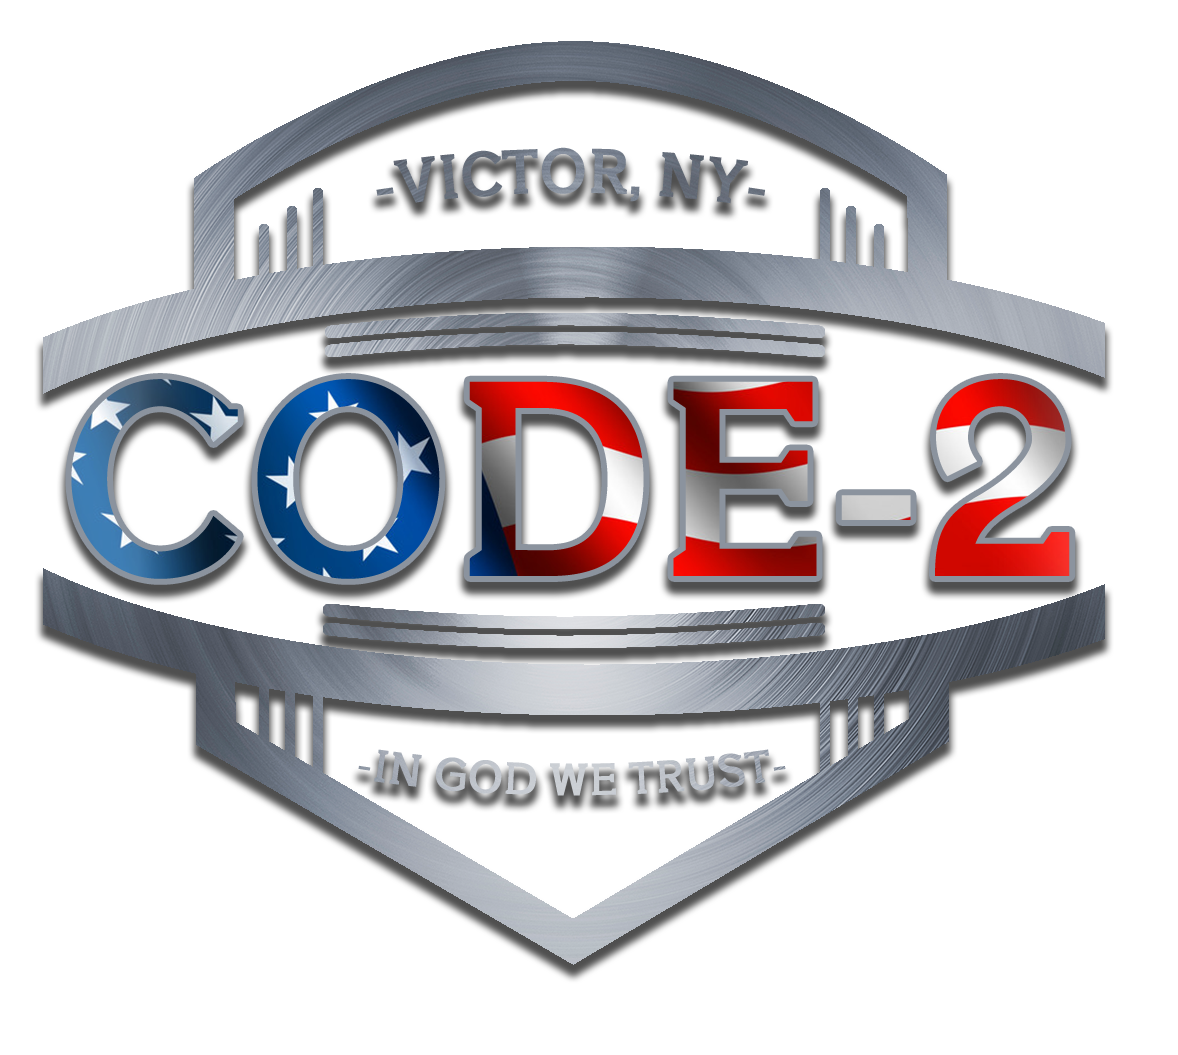 www.code-2.com